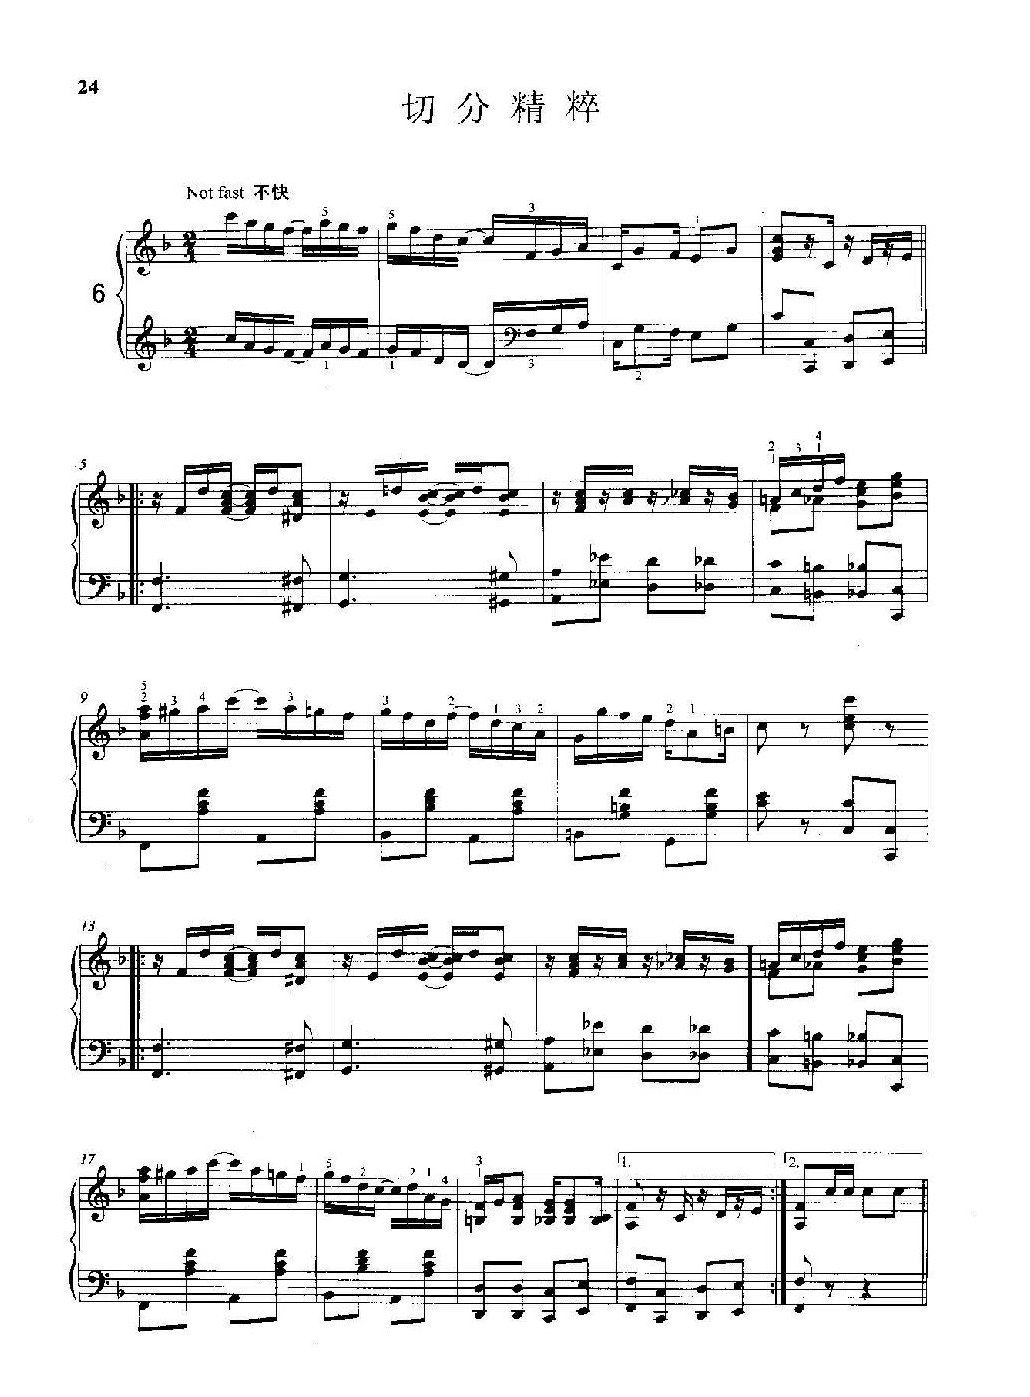 雷格泰姆钢琴乐谱《切分精粹》雷格泰姆之王斯科特·乔普林